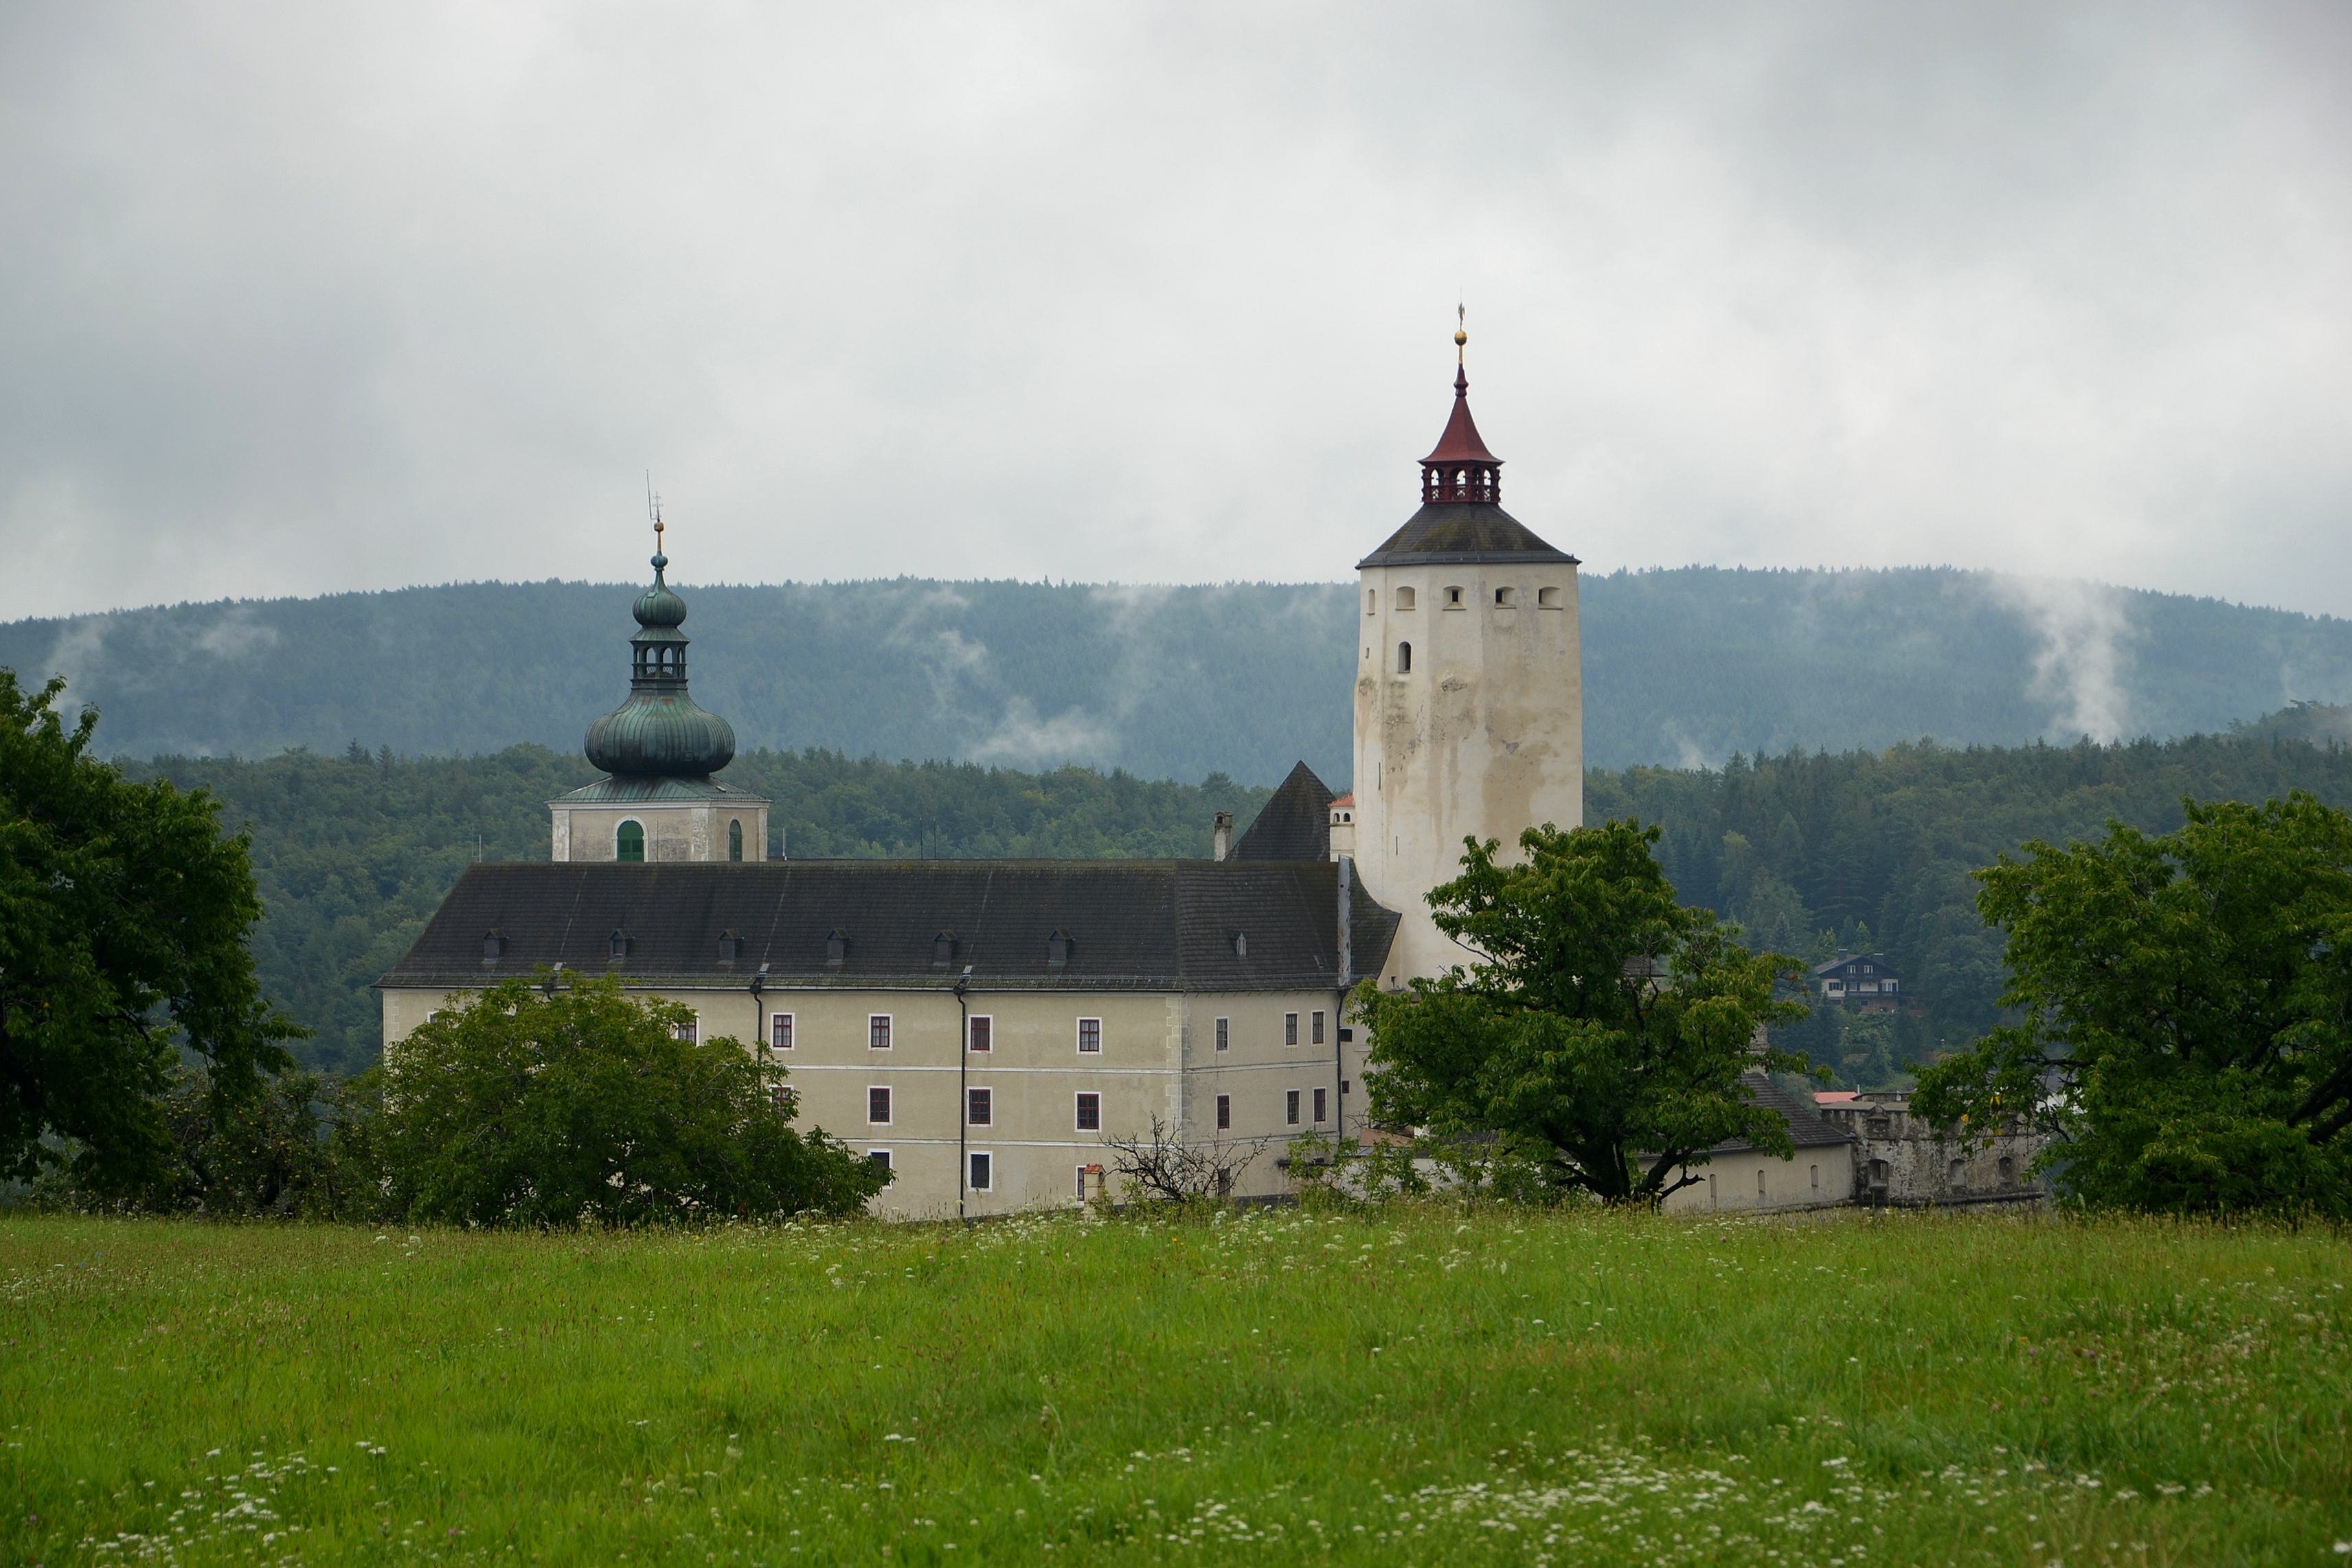 Burg Forchtenstein im Süden von Mattersburg. Die Burg stammt aus dem Mittelalter, wurde aber später umgebaut.